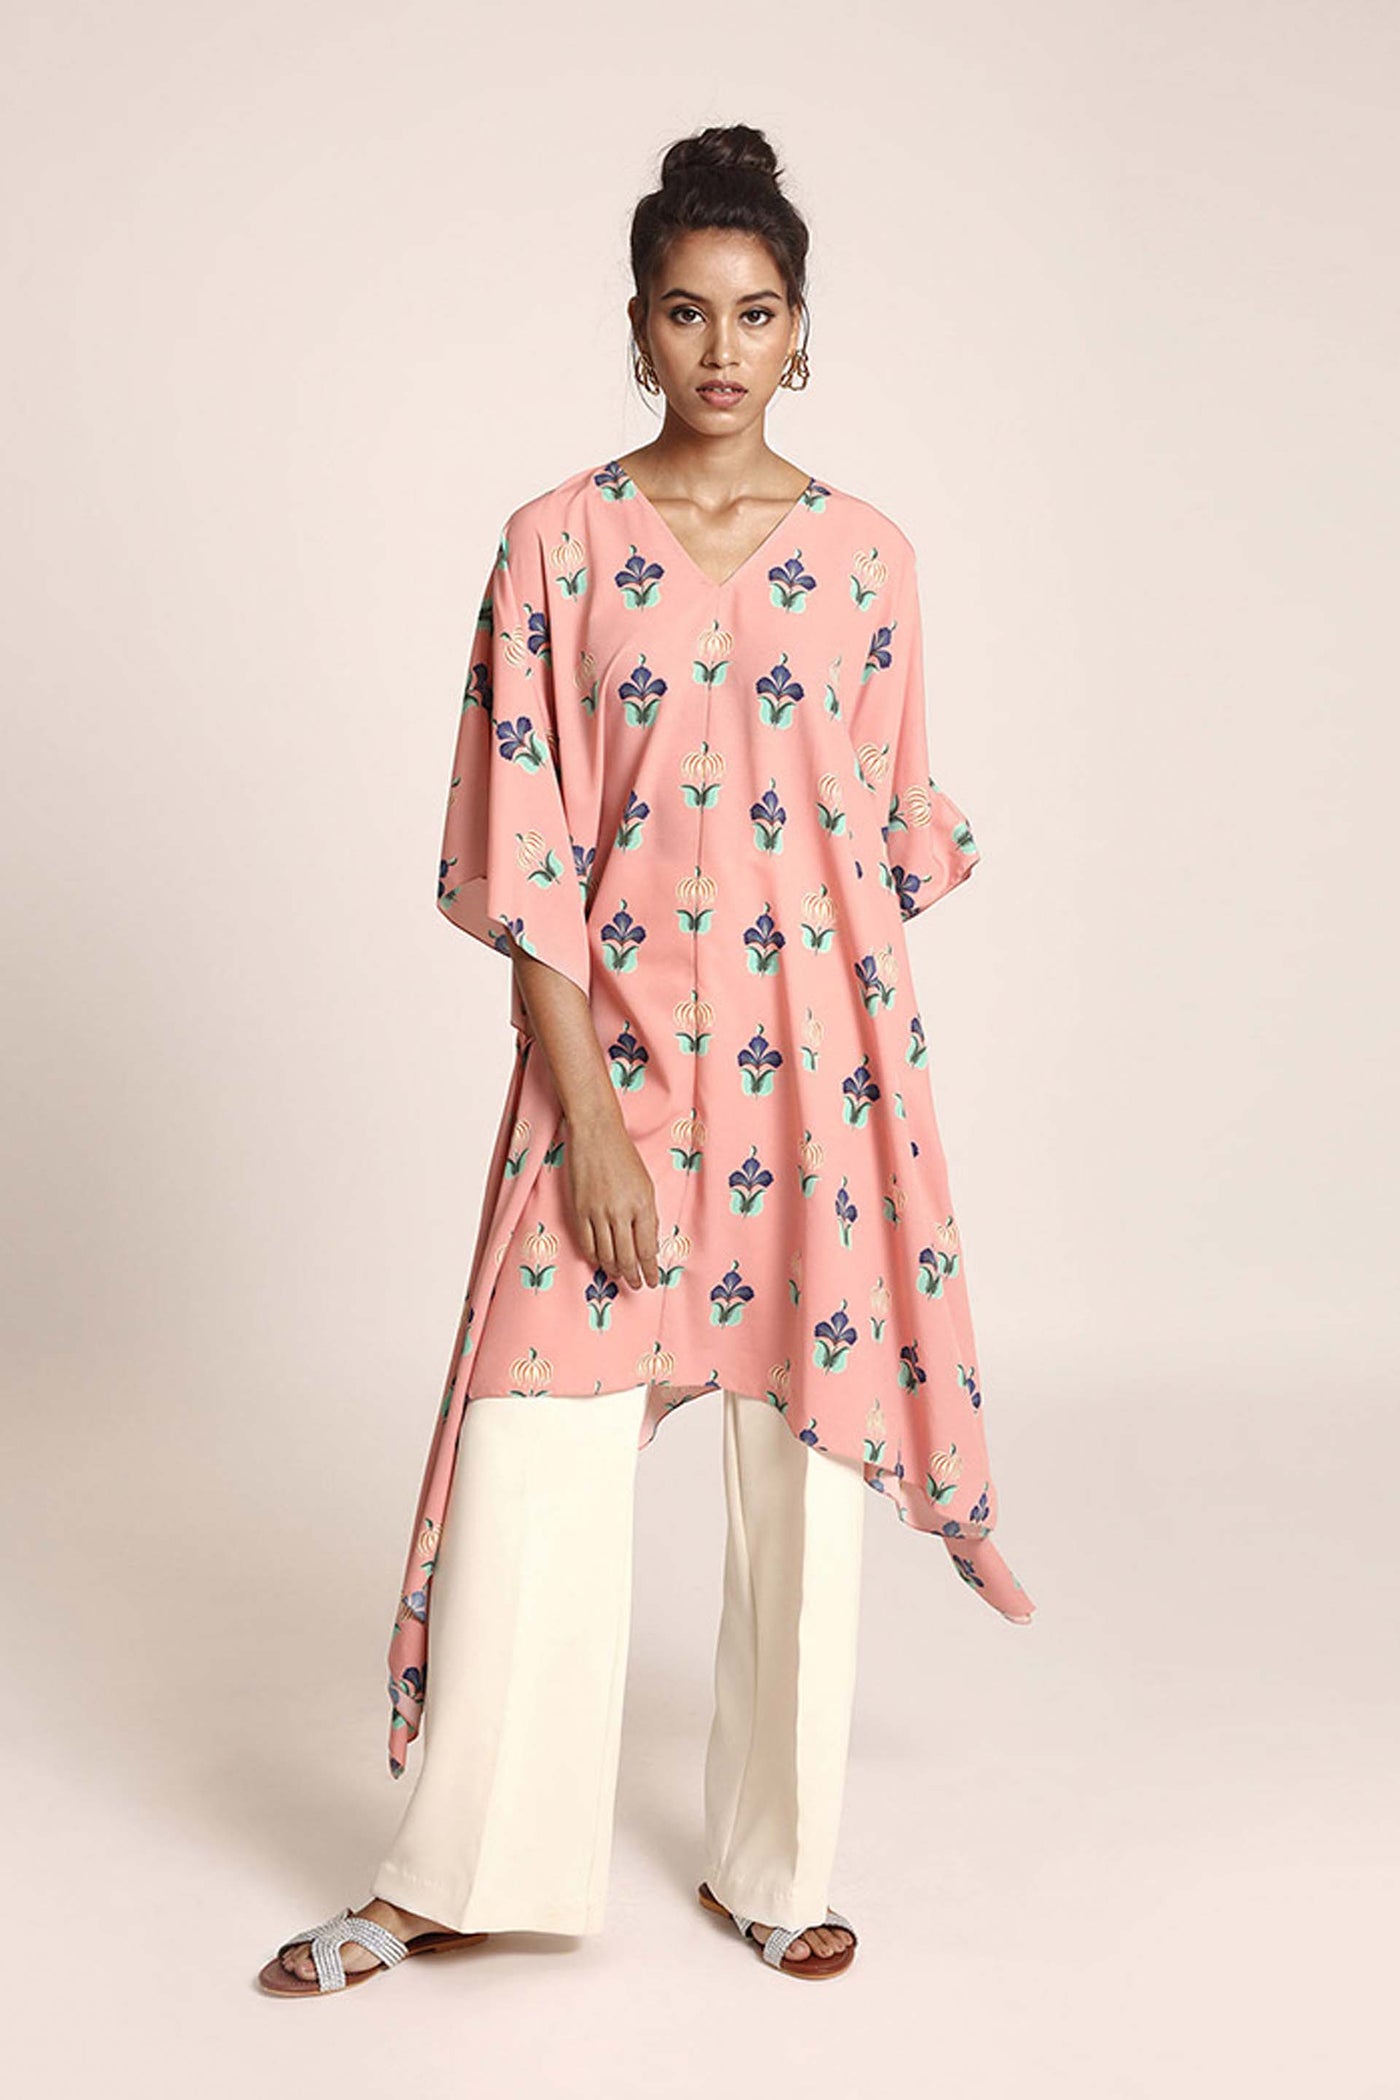 PayaL Singhal Pink Colour Printed Art Crepe Kaftan pink ndian designer wear online shopping melange singapore